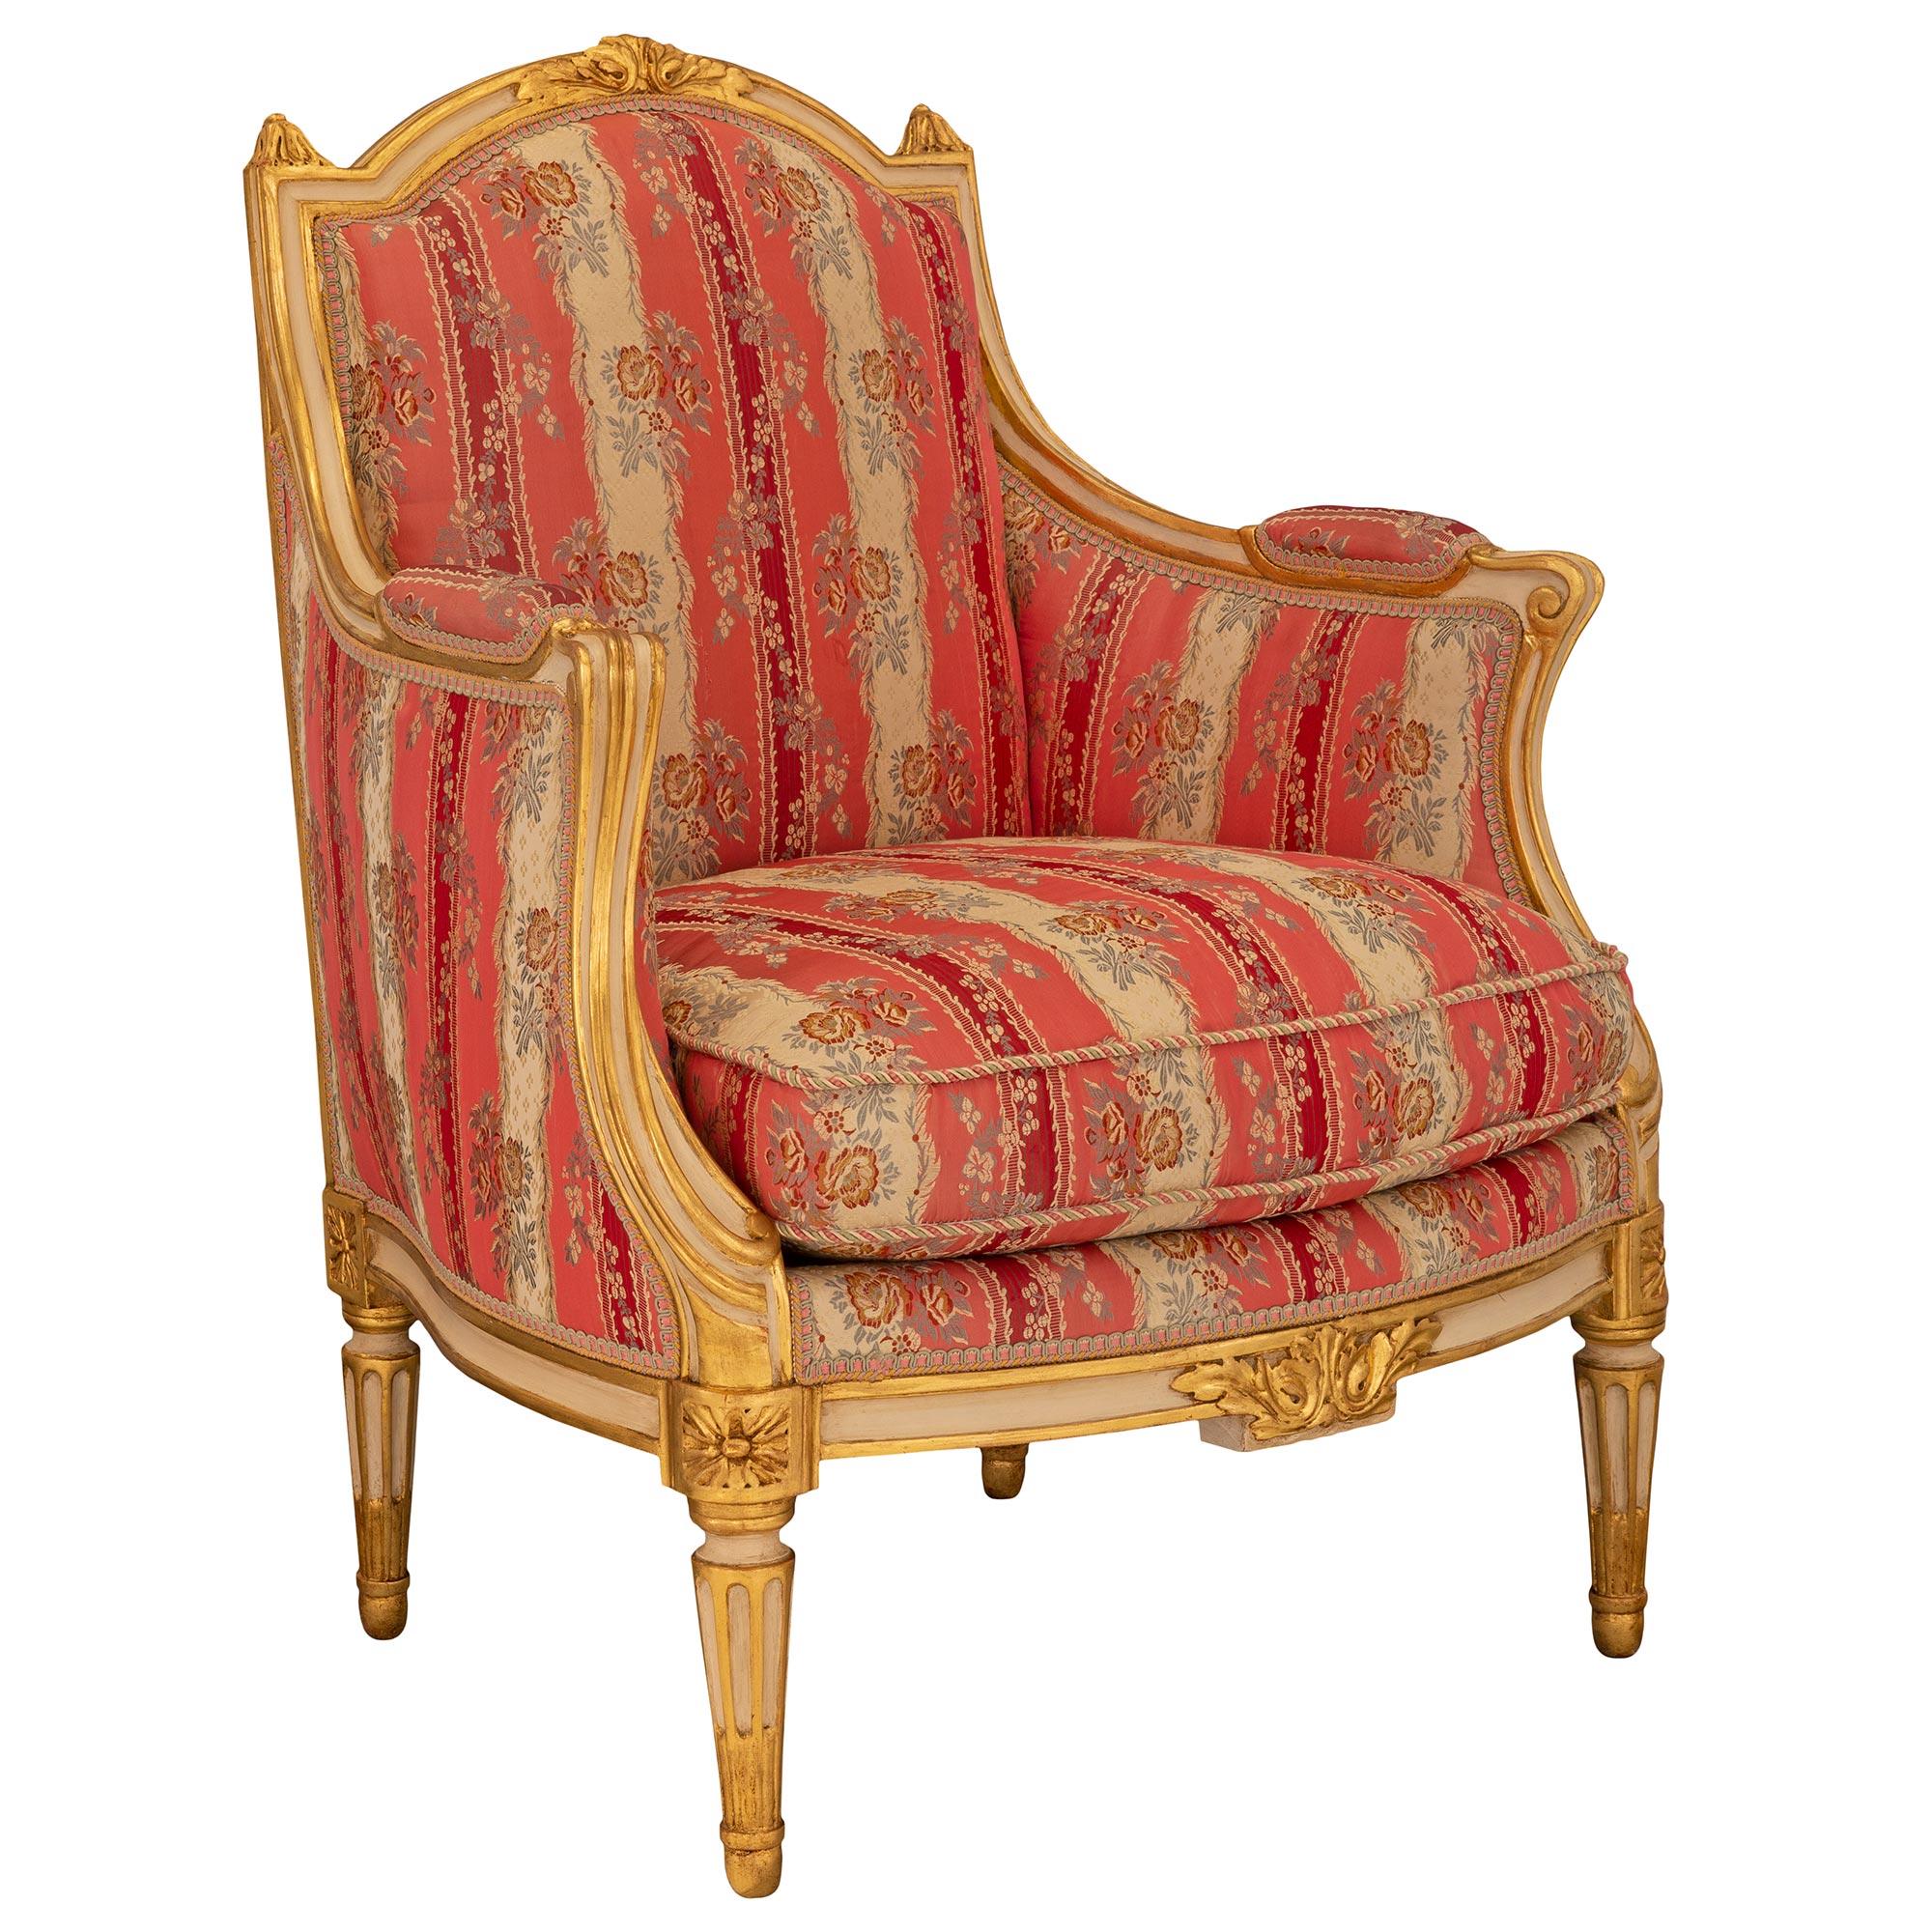 Une paire exceptionnelle et très élégante de fauteuils français du 19ème siècle de style Louis XVI en bois patiné et doré. Chaque fauteuil est surélevé par des pieds circulaires fuselés et cannelés, avec des pieds finement marbrés et des rosettes